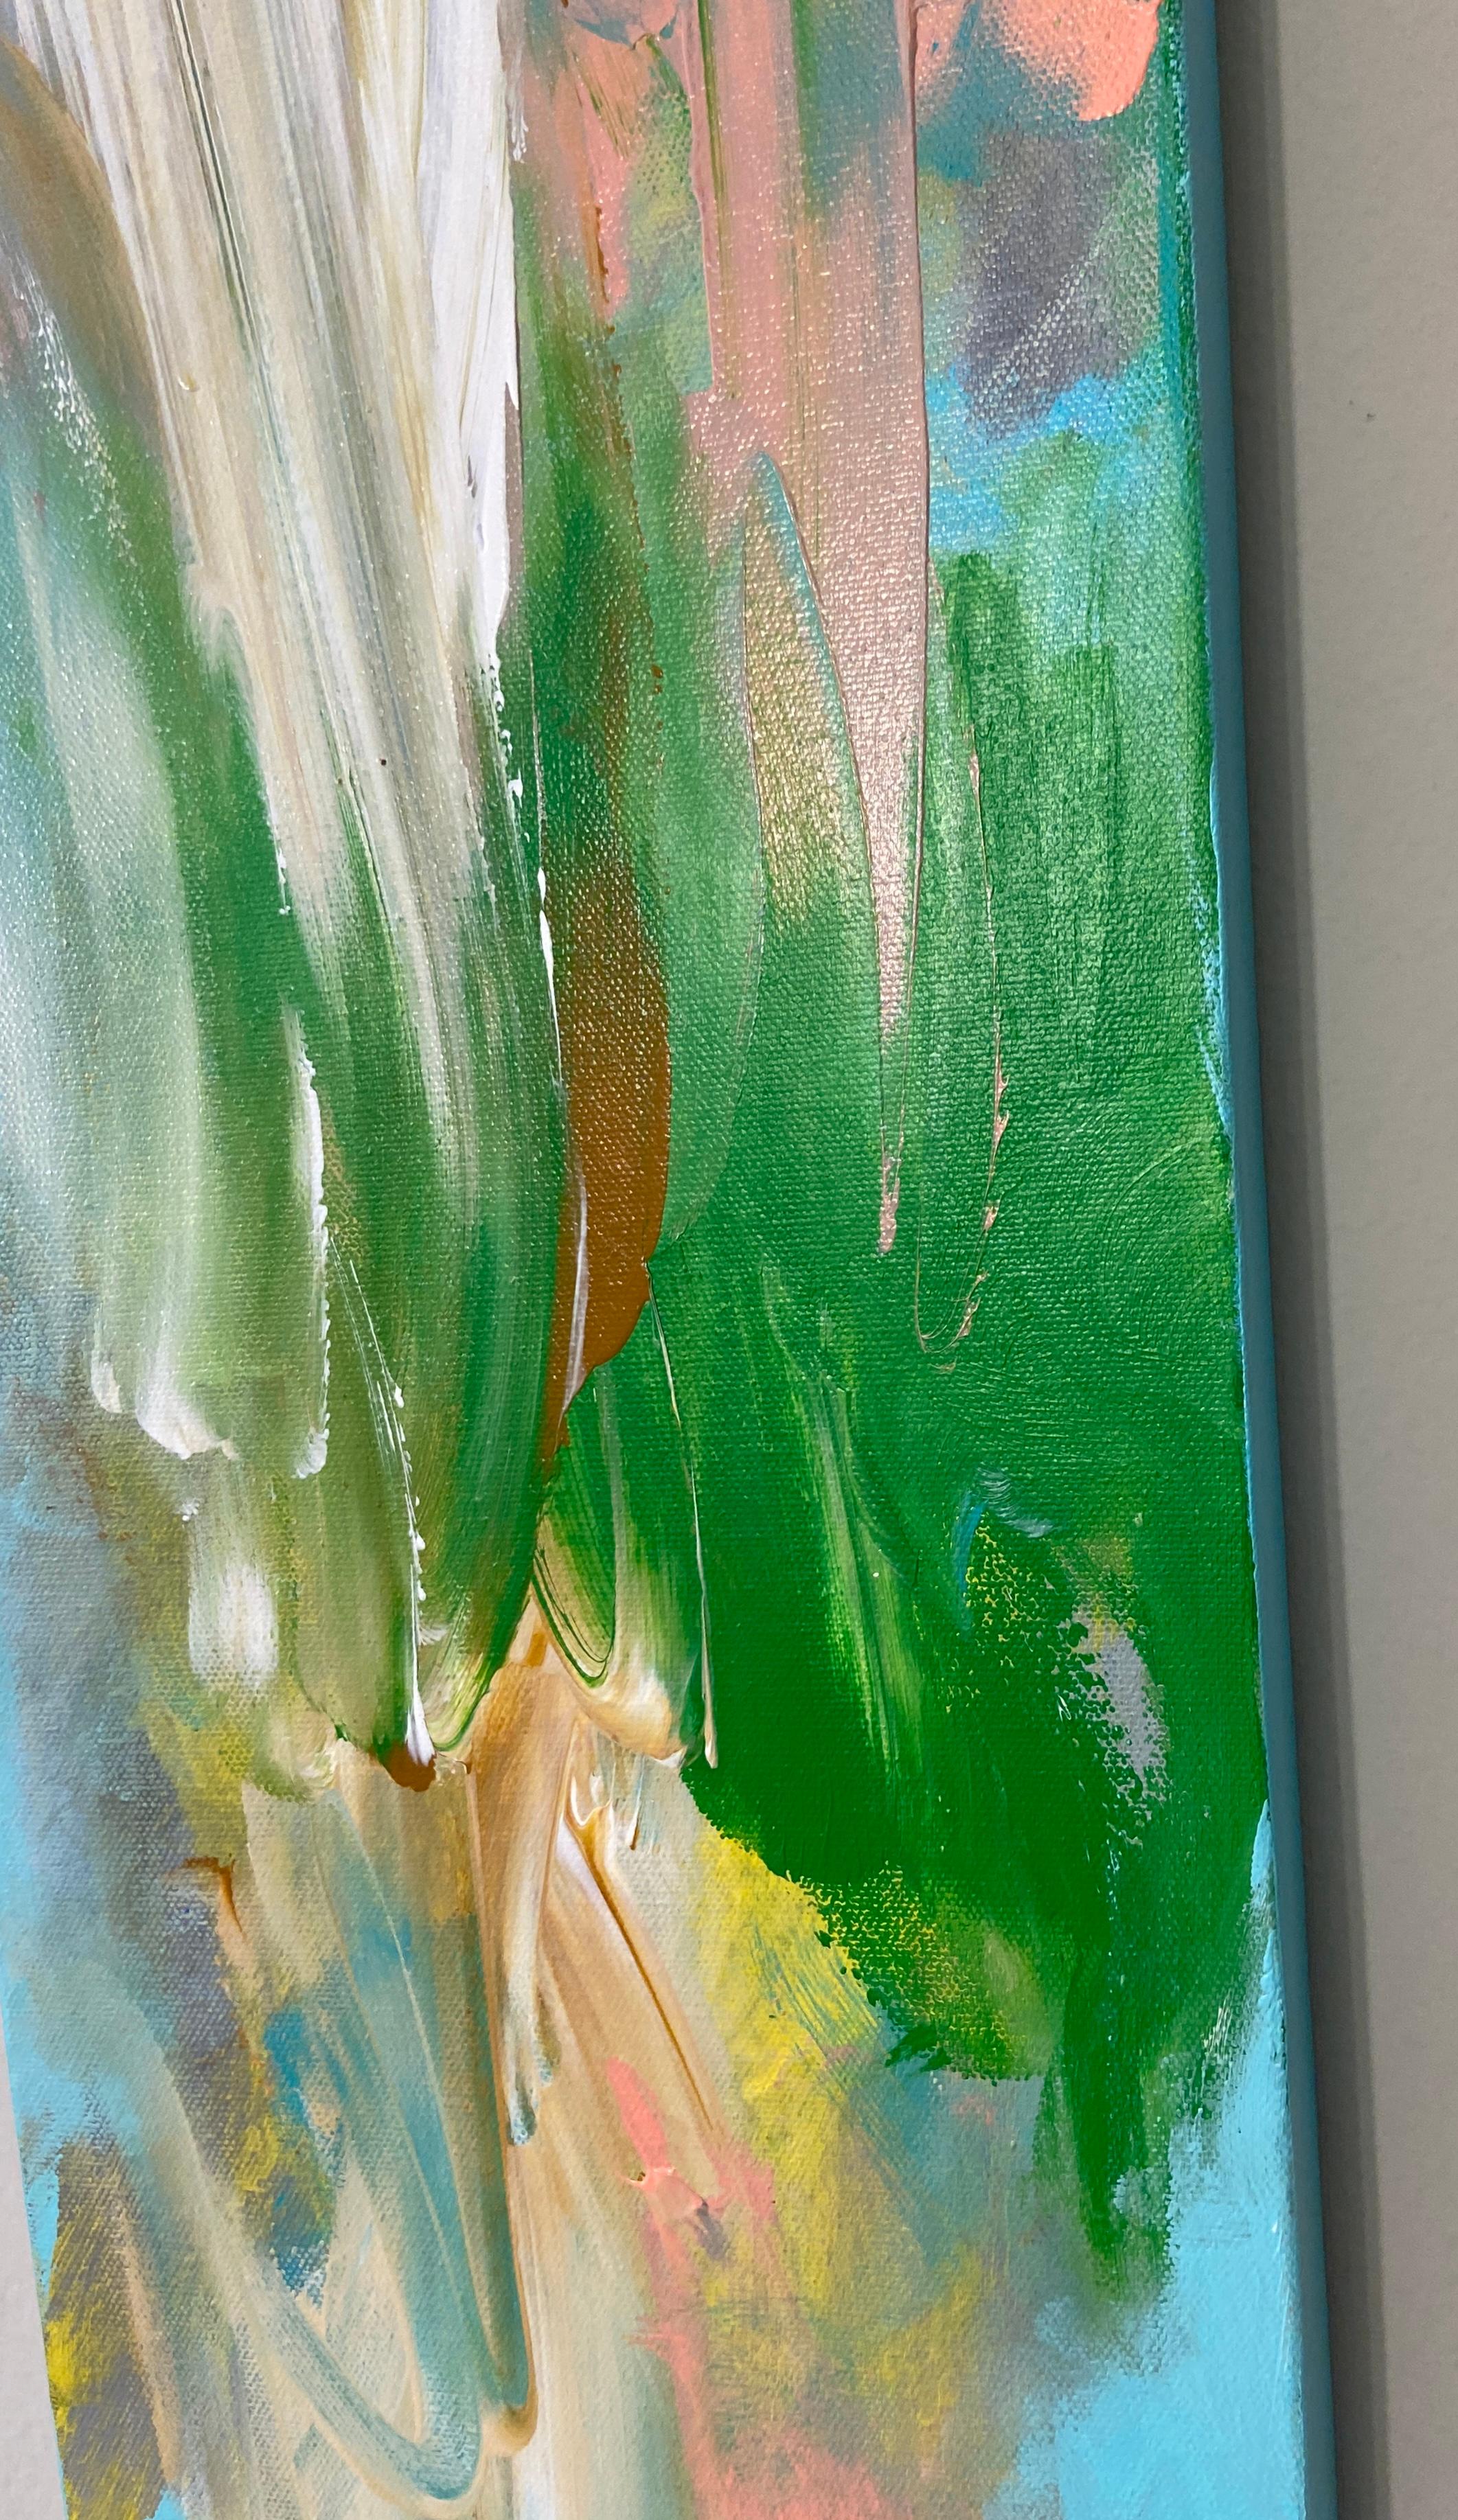 „Song of Spring“, Landschaft Abstrakt, Emotional, Pastell, Blau, Pfirsich, Grün (Abstrakter Expressionismus), Painting, von Michelle Thomas Artist